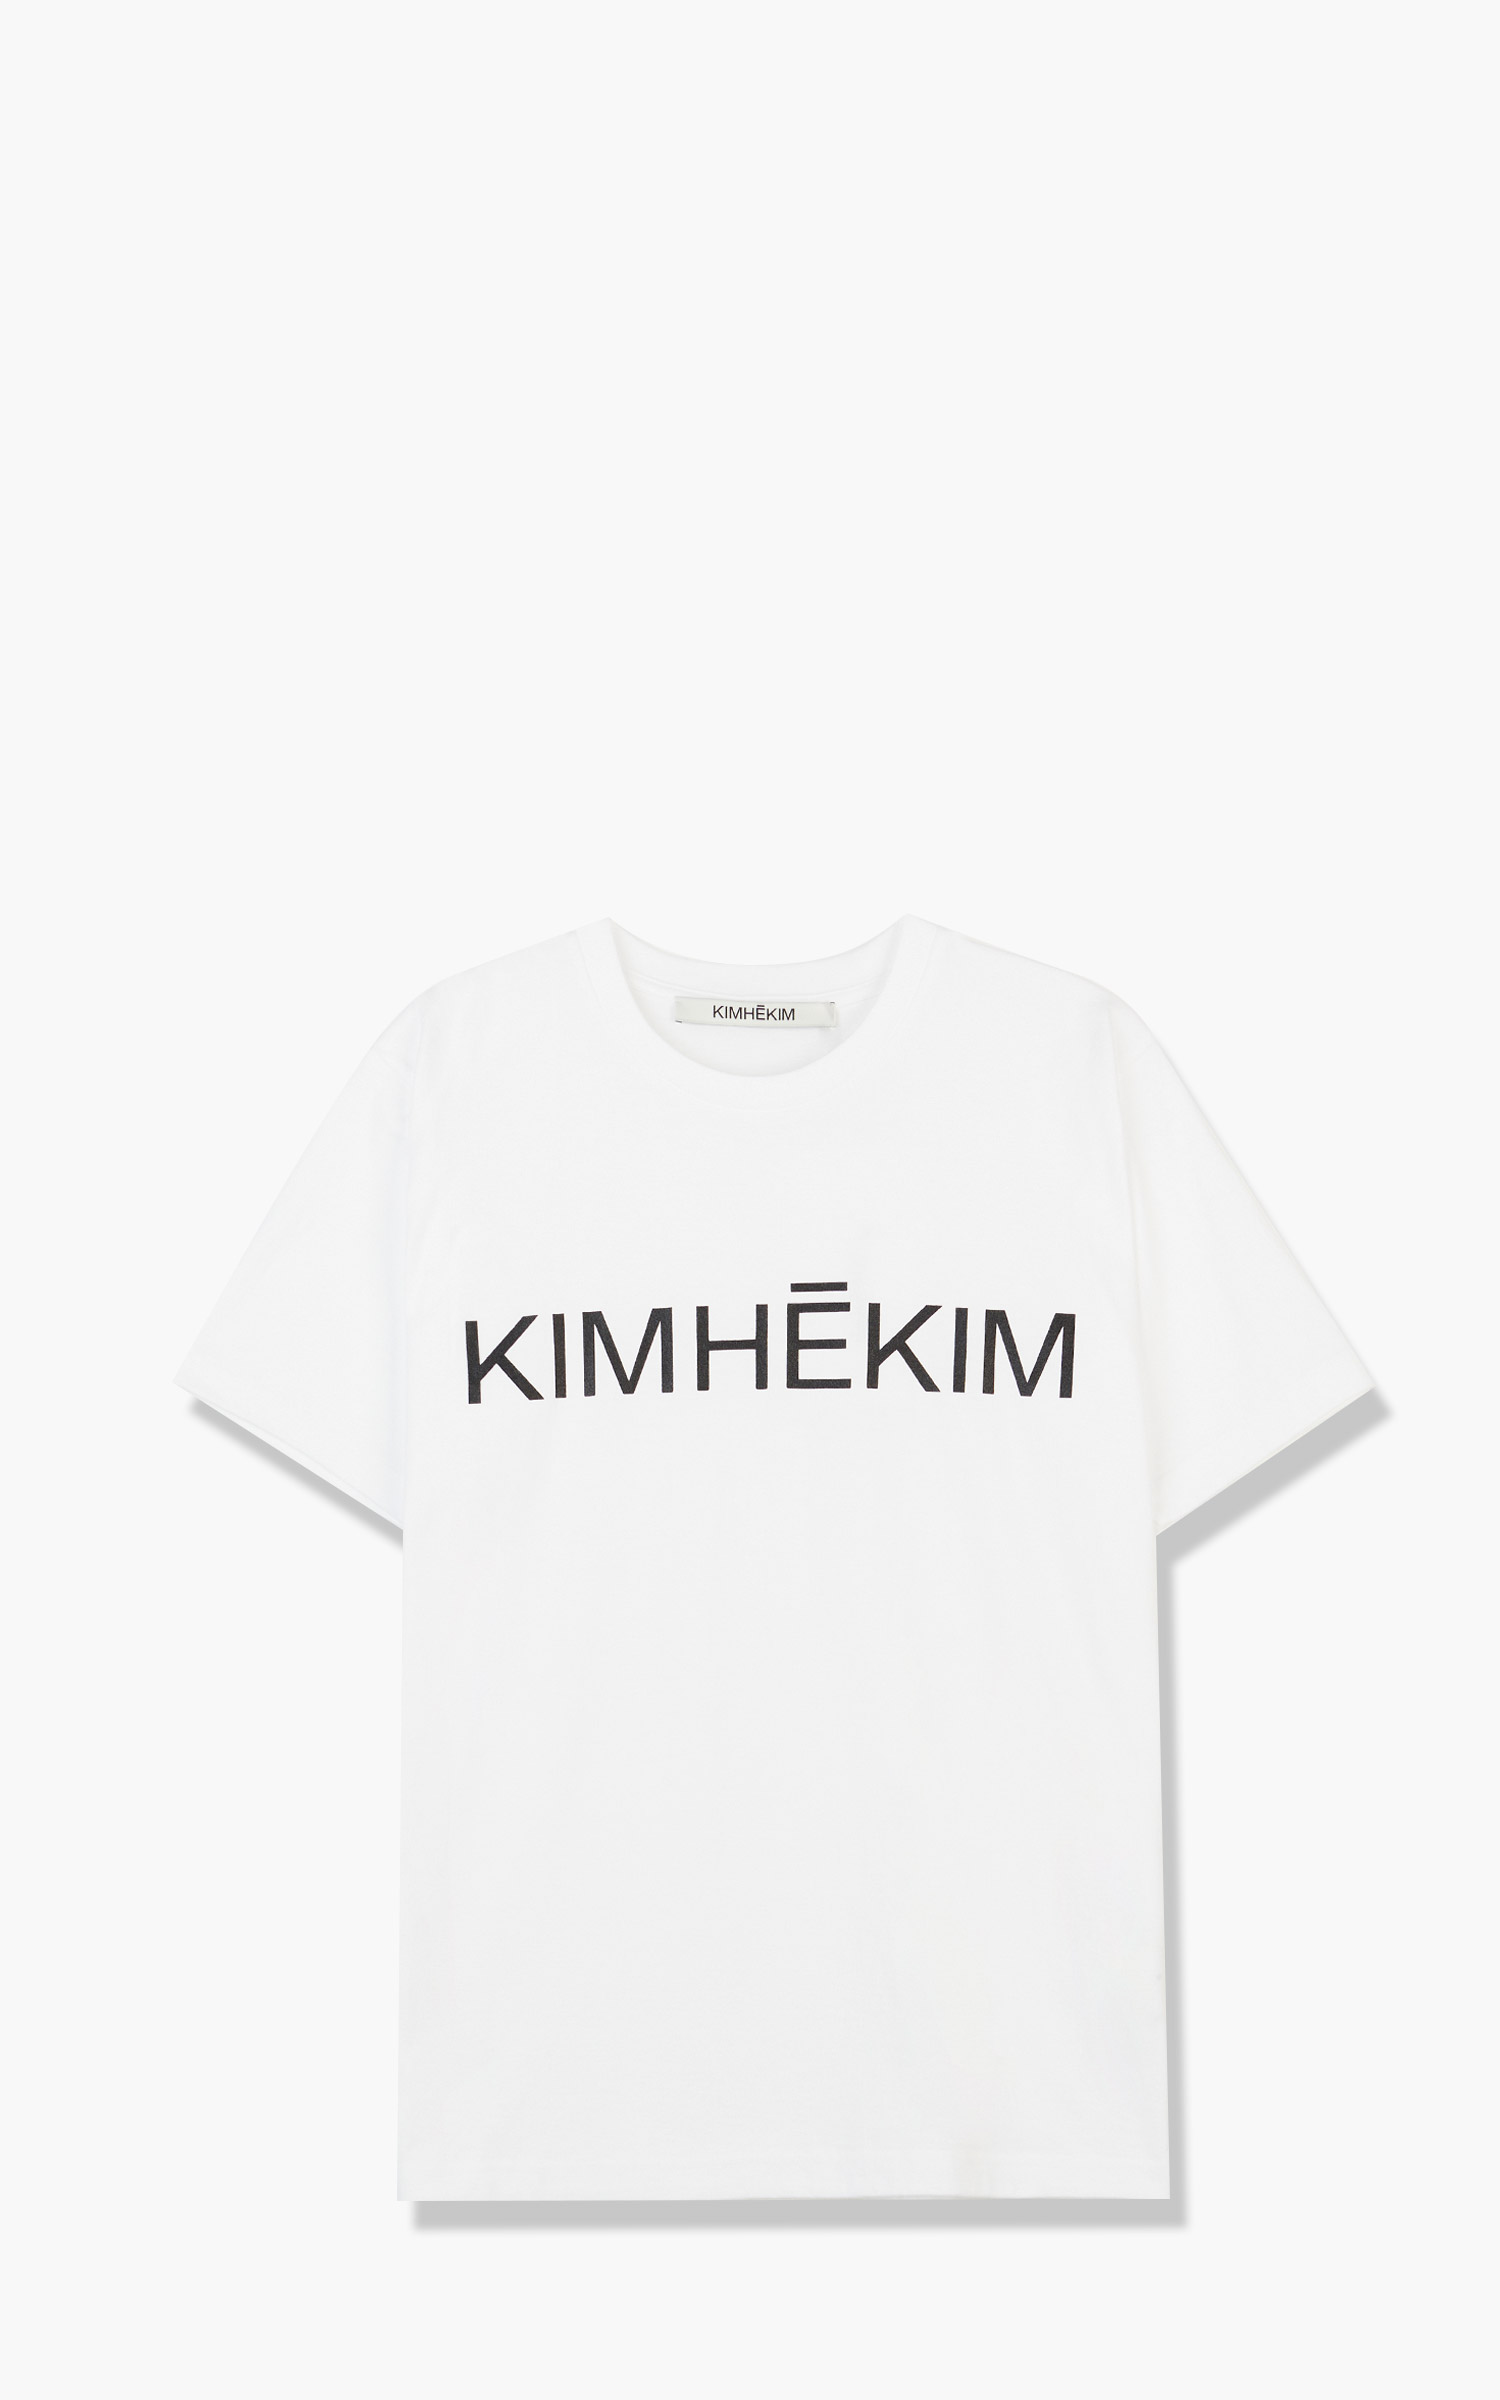 KIMHEKIM Kimhekim T-Shirt White